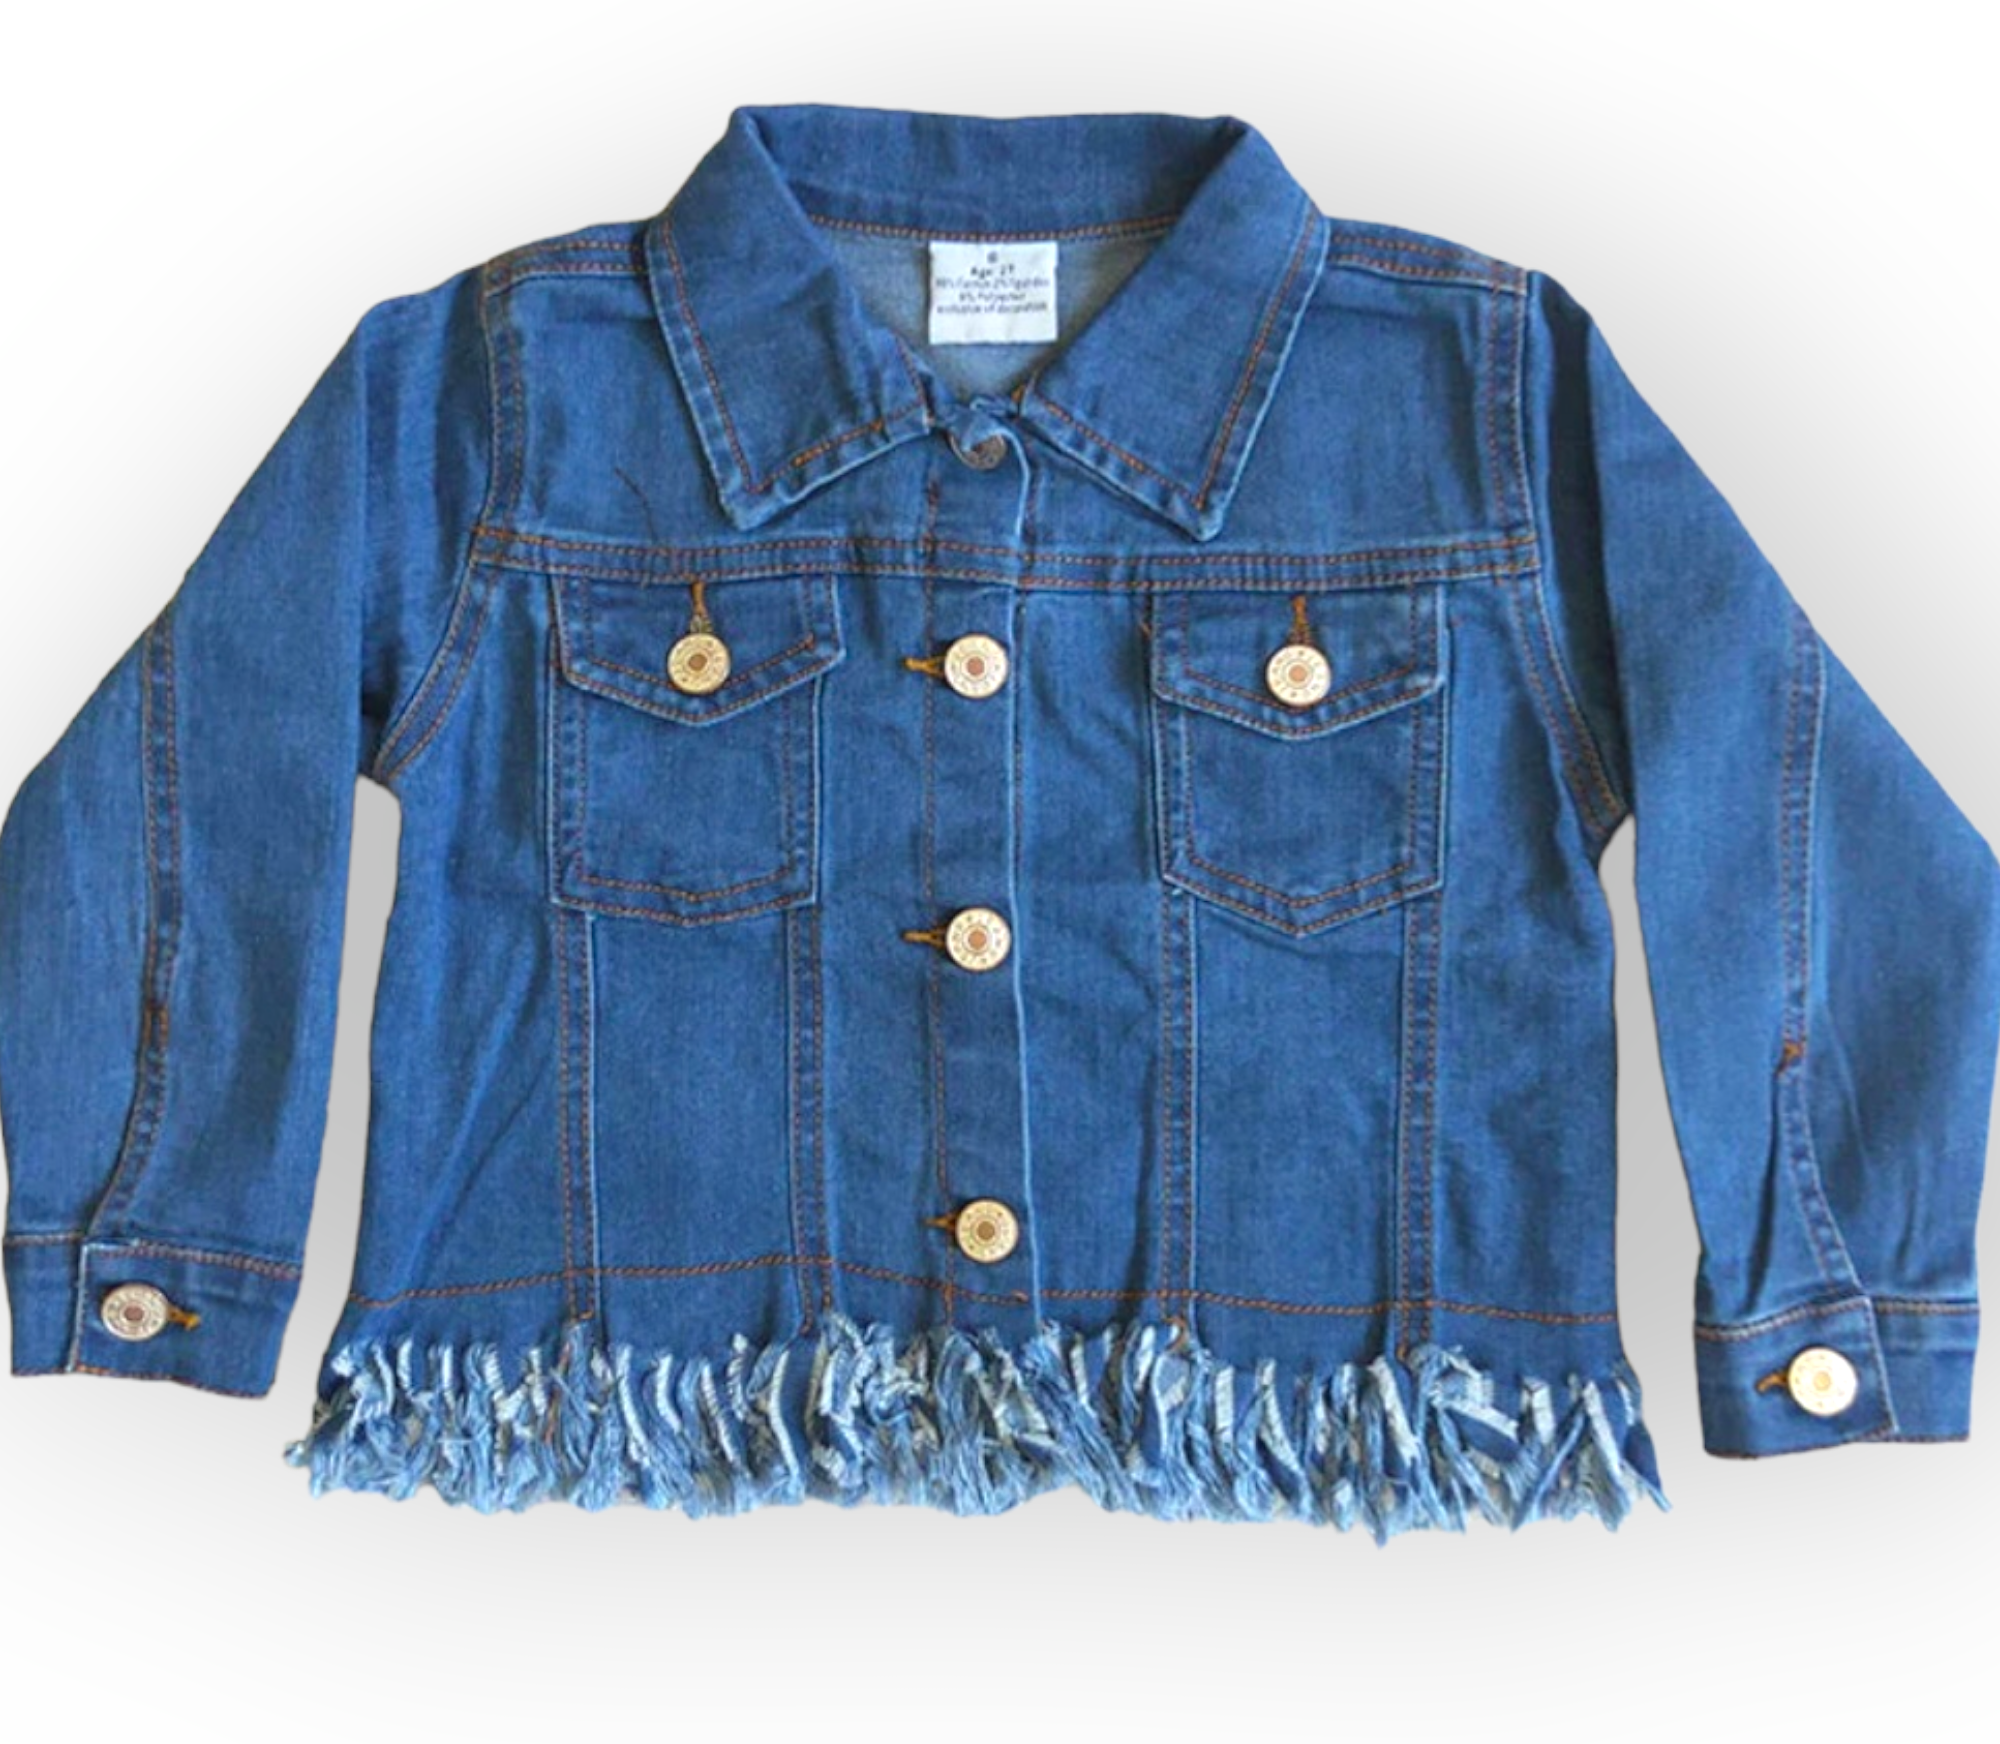 Personalized Jean Jacket / Kids Jean Jacket / Toddler Jean Jacket / Baby  Jean Jacket / Custom Jean Jacket / Denim Jacket Kids Denim Jacket - Etsy